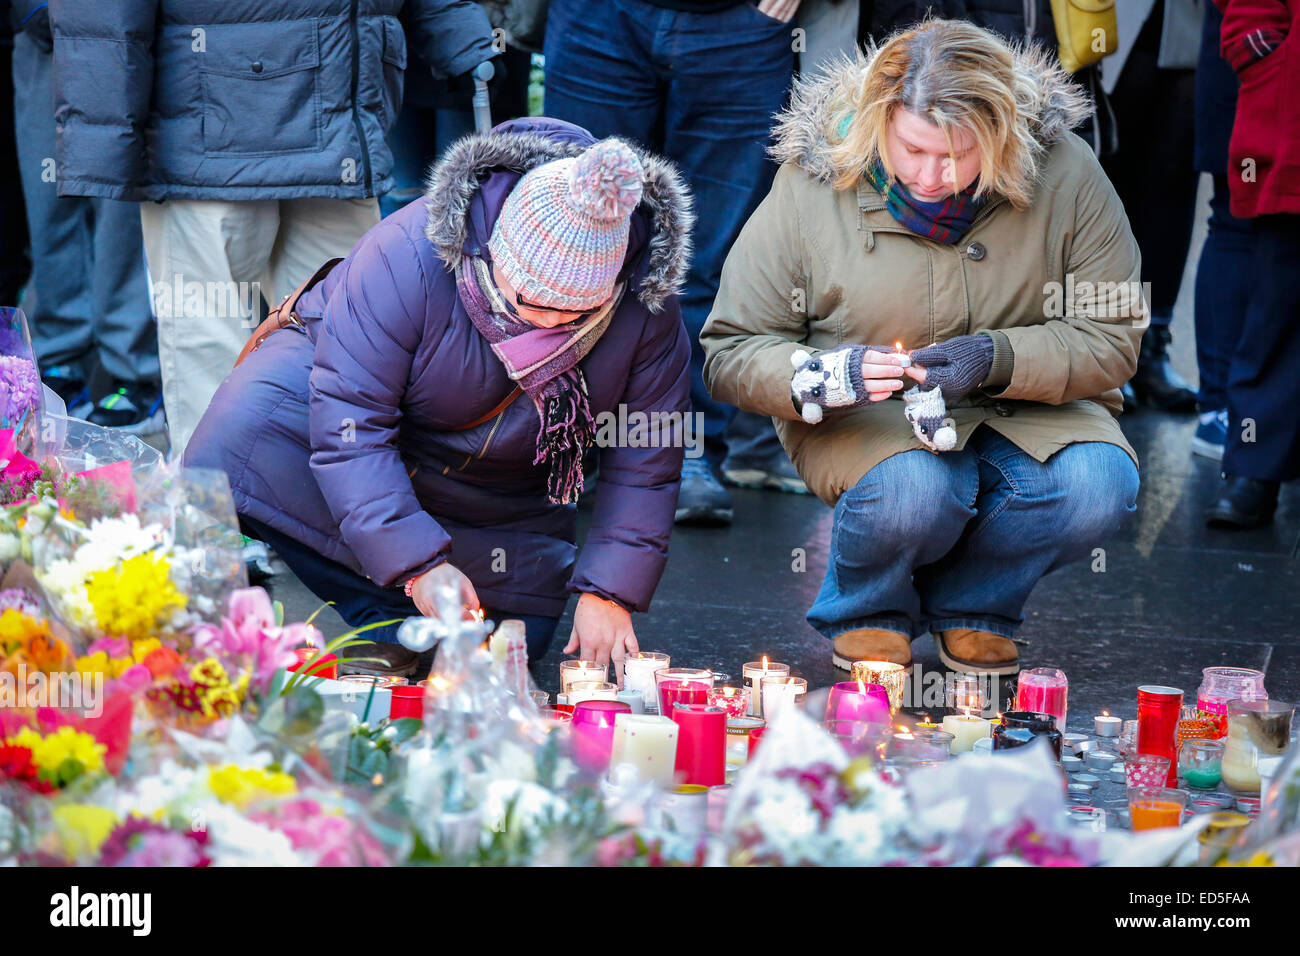 Más de 1000 personas participaron en una vigilia de velas de 2 minutos en el Royal Exchange Square, Glasgow en recuerdo de las 6 personas que fueron víctimas del accidente de camiones tolva de Glasgow en la plaza George hace una semana. Muchas personas llevaron flores, velas y algunos dijeron oraciones como una marca de apoyo y sus condolencias. Foto de stock